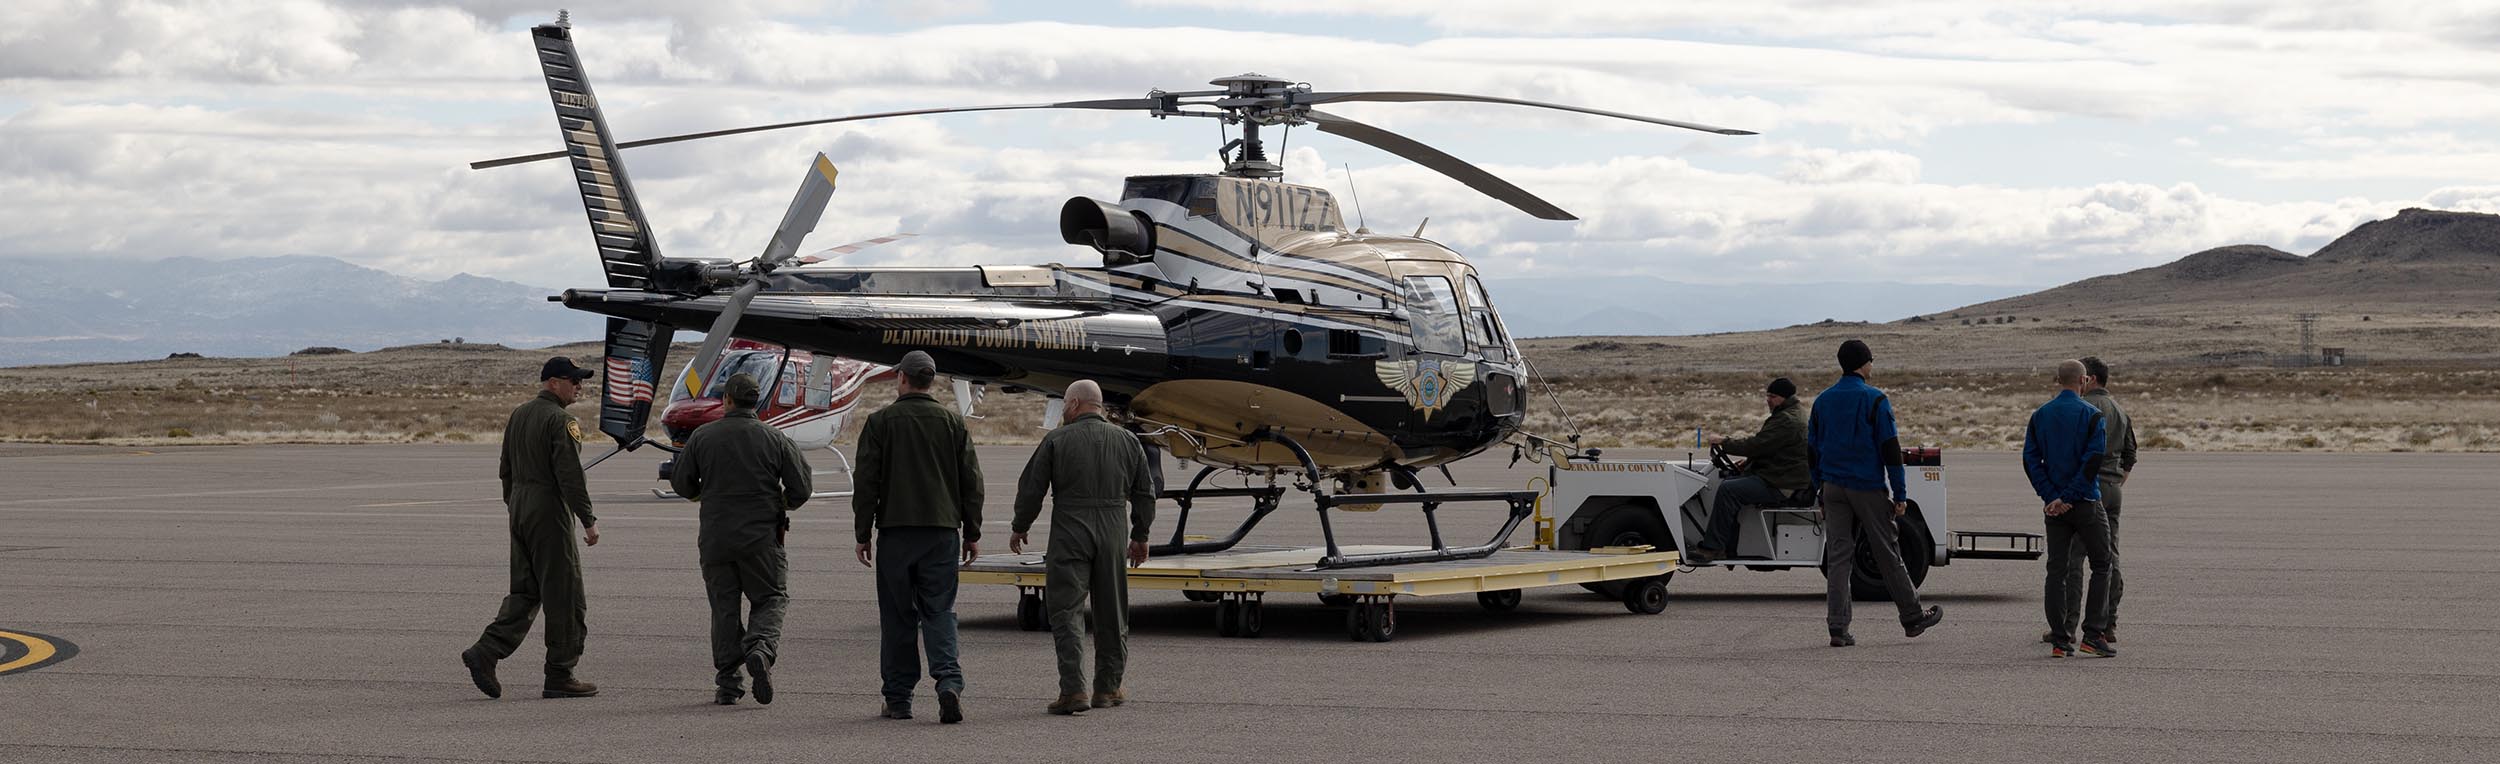 Nuevo helicóptero del alguacil del condado de Bernalillo